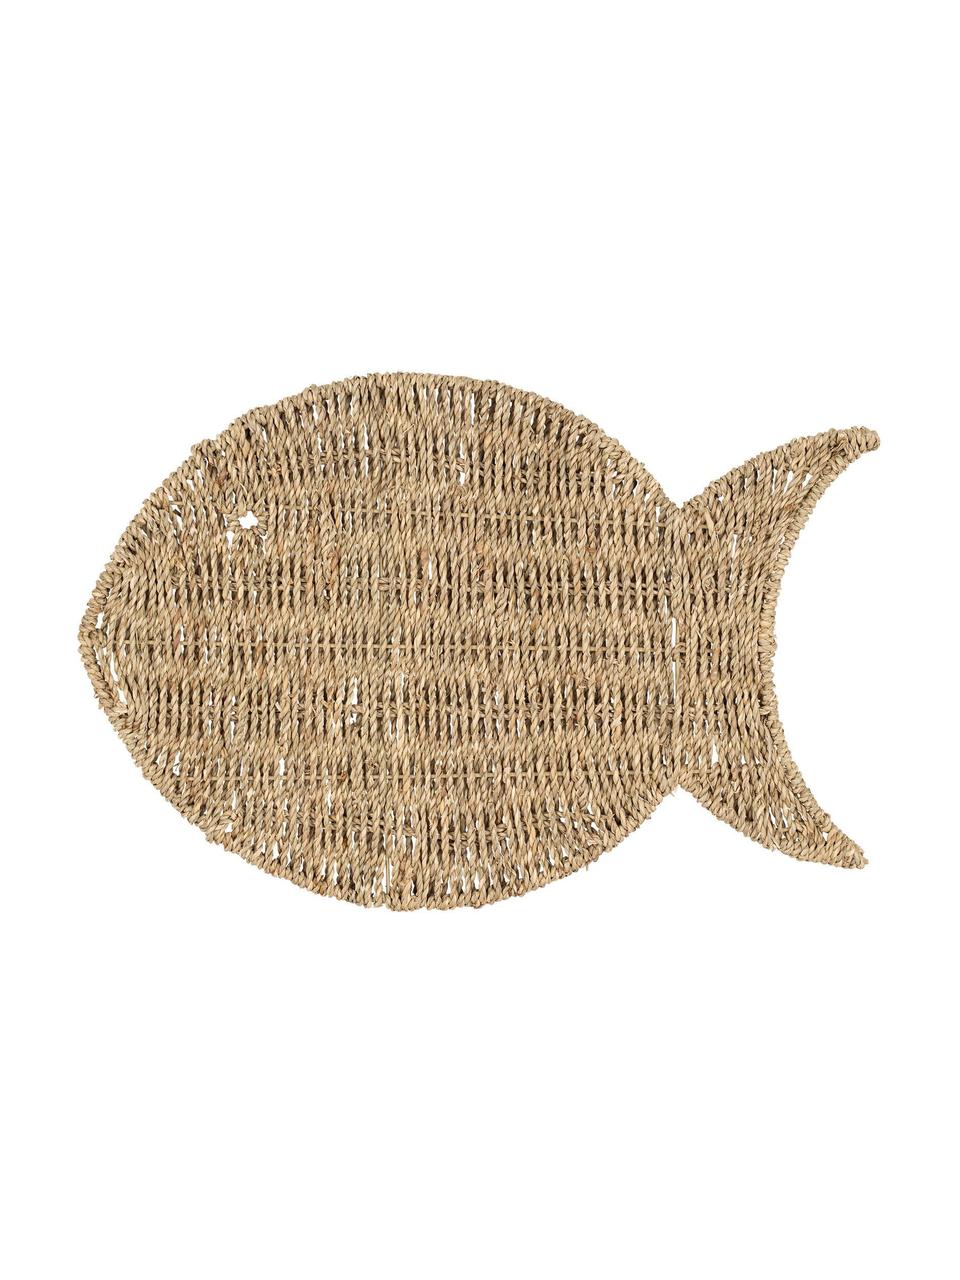 Podkładka z trawy morskiej Fish, Trawa morska, Jasny brązowy, S 30 x D 45 cm